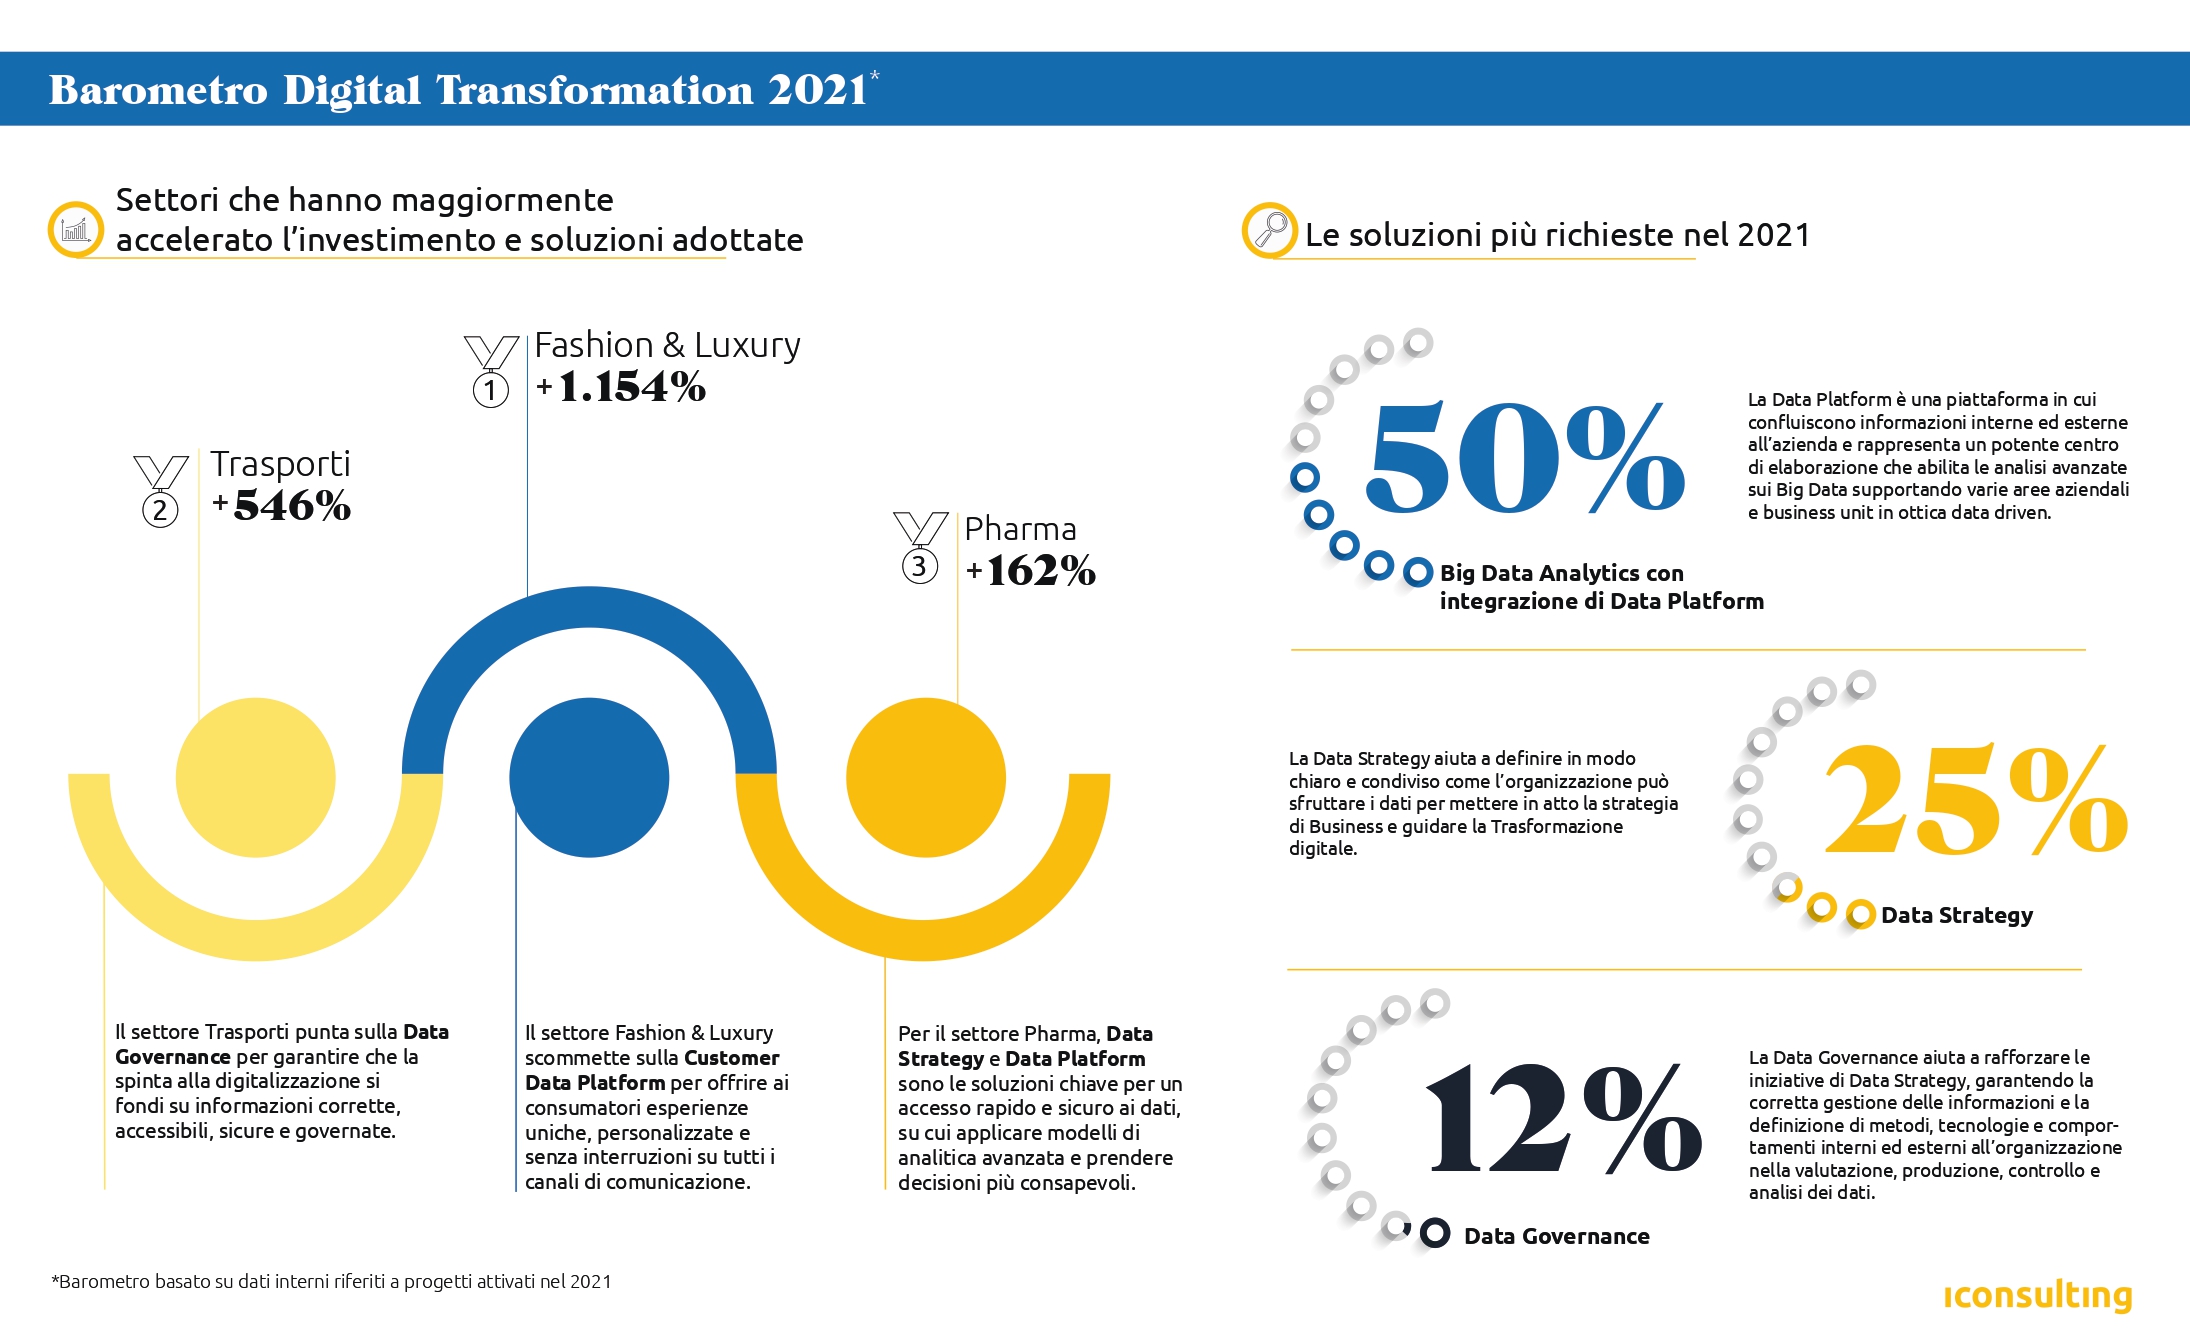 iInfographic för Digital Transformation 2021-barometern skapad av Iconsulting